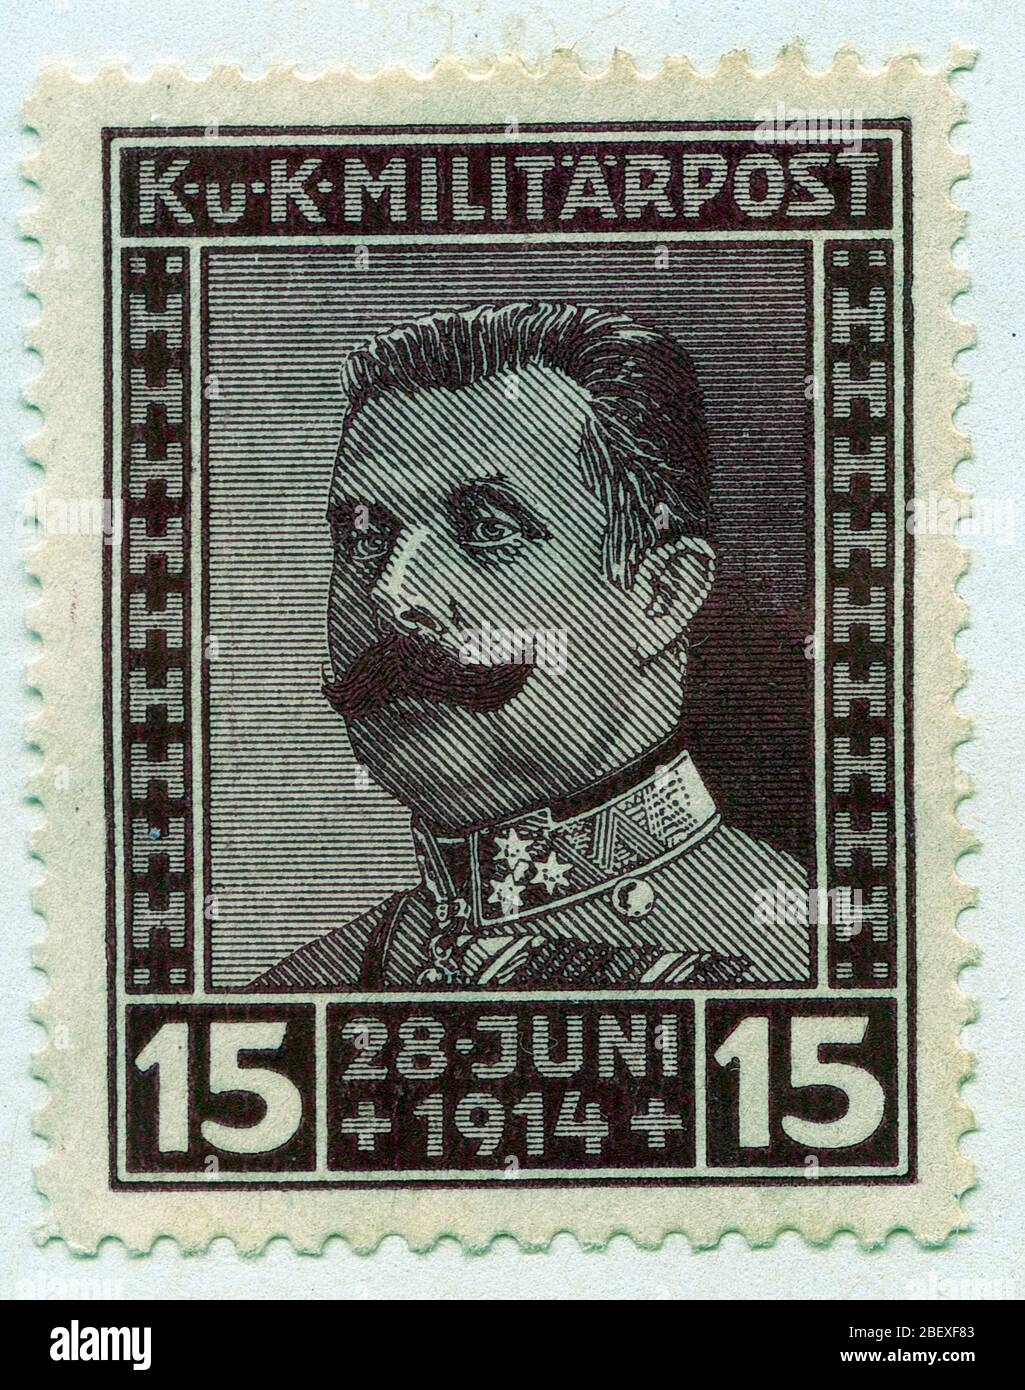 Franz Ferdinand Archduke, Autriche, sur timbre-poste militaire Banque D'Images